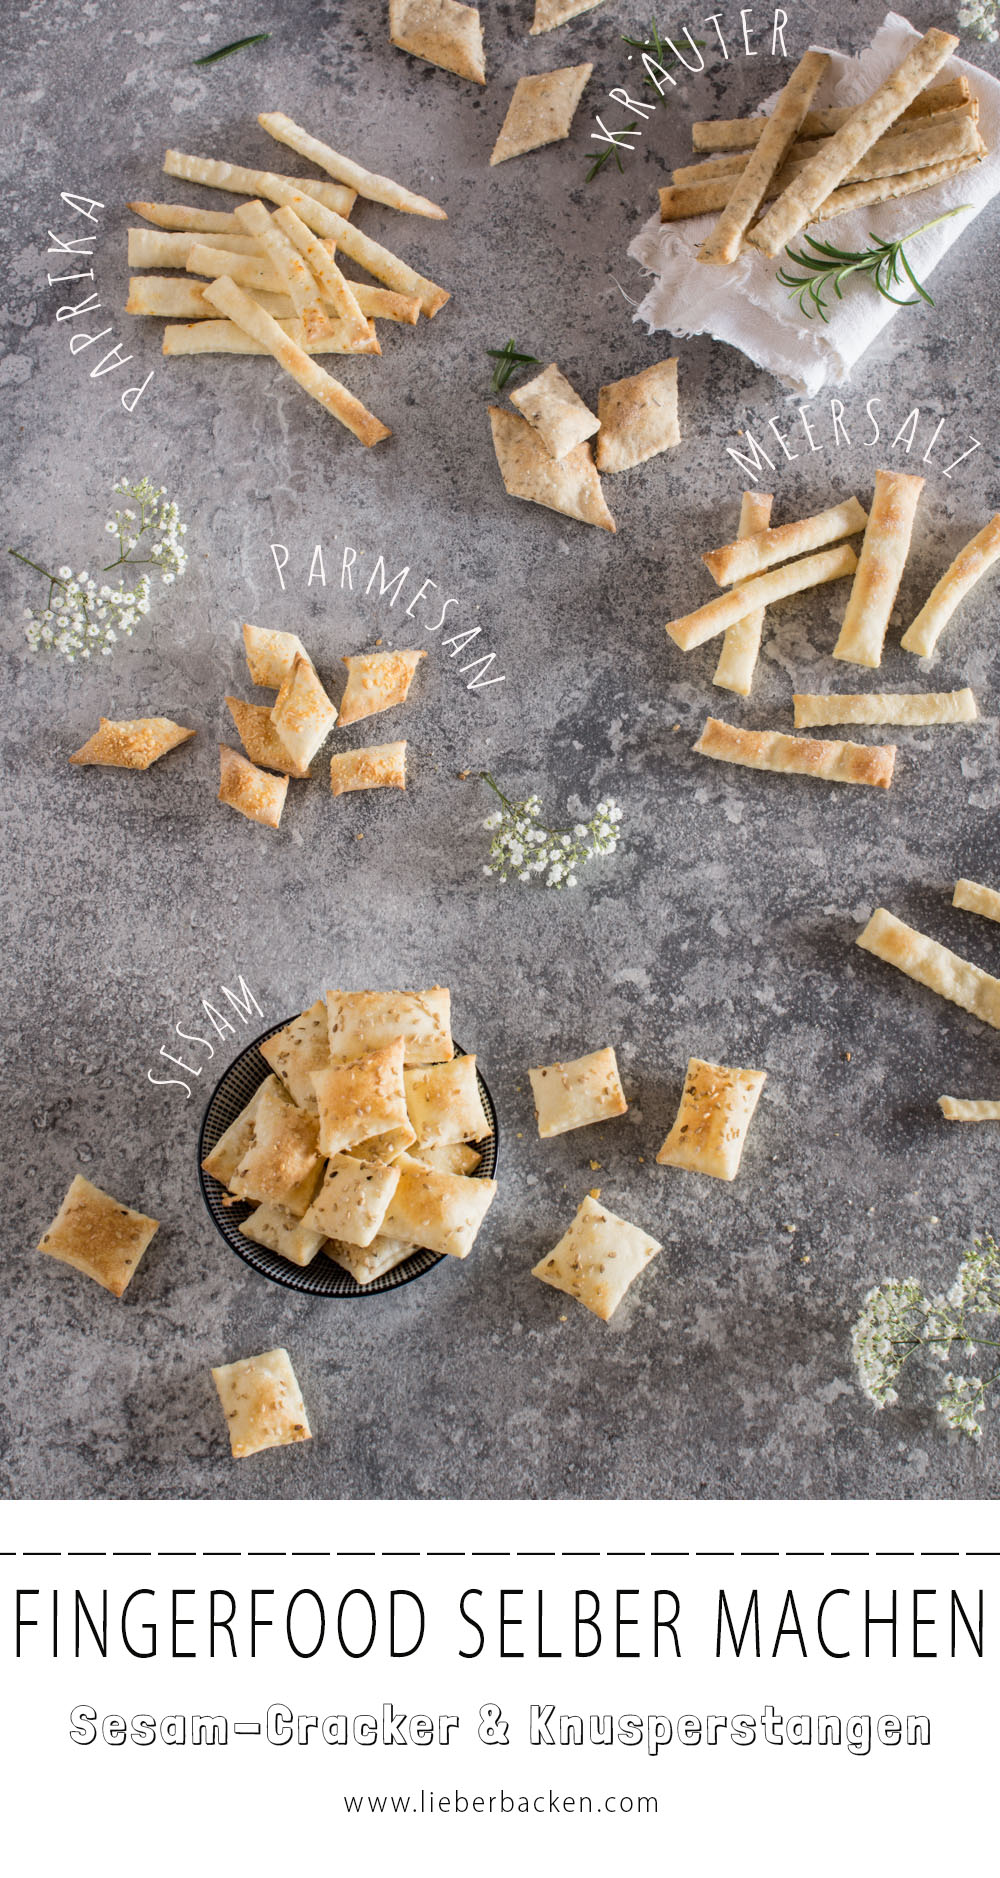 Fingerfood selber machen: Sesam Cracker & Knusperstangen mit Meersalz - einfaches und leckeres Rezept